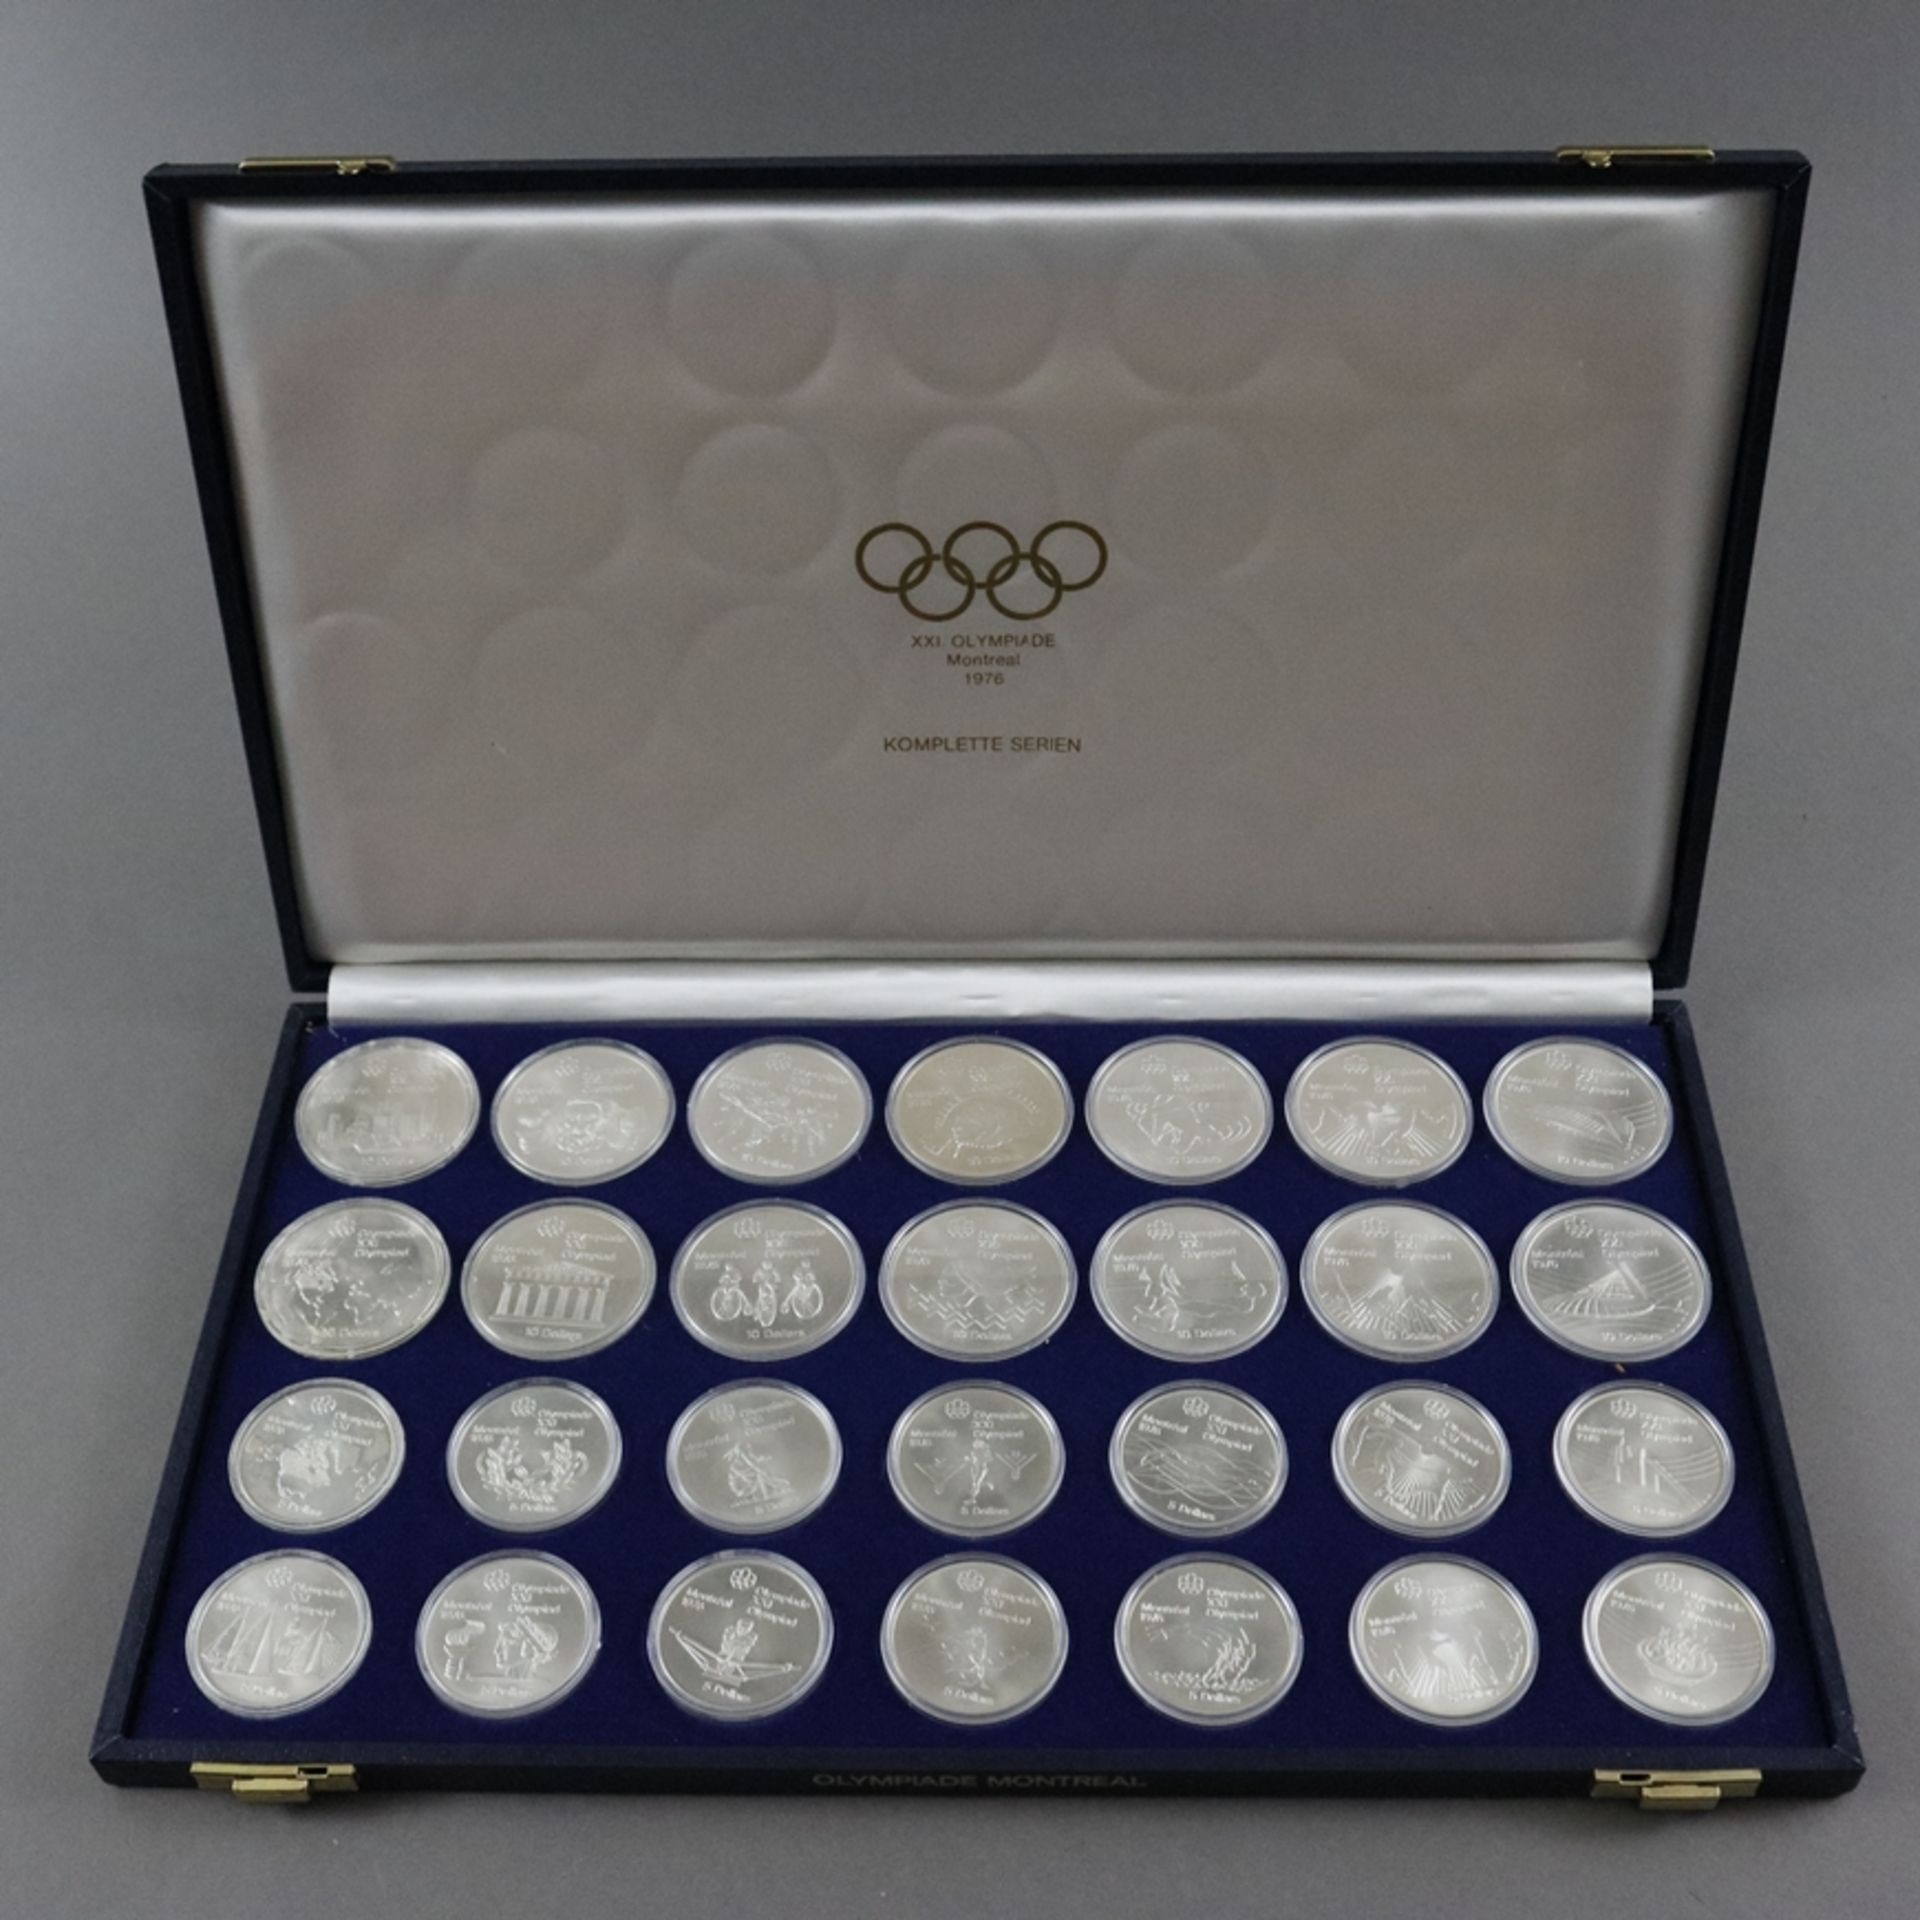 Olympia-Münzenset - 925/000 Silber, Olympische Spiele 1976 in Montreal, Kanada, komplette Serie von